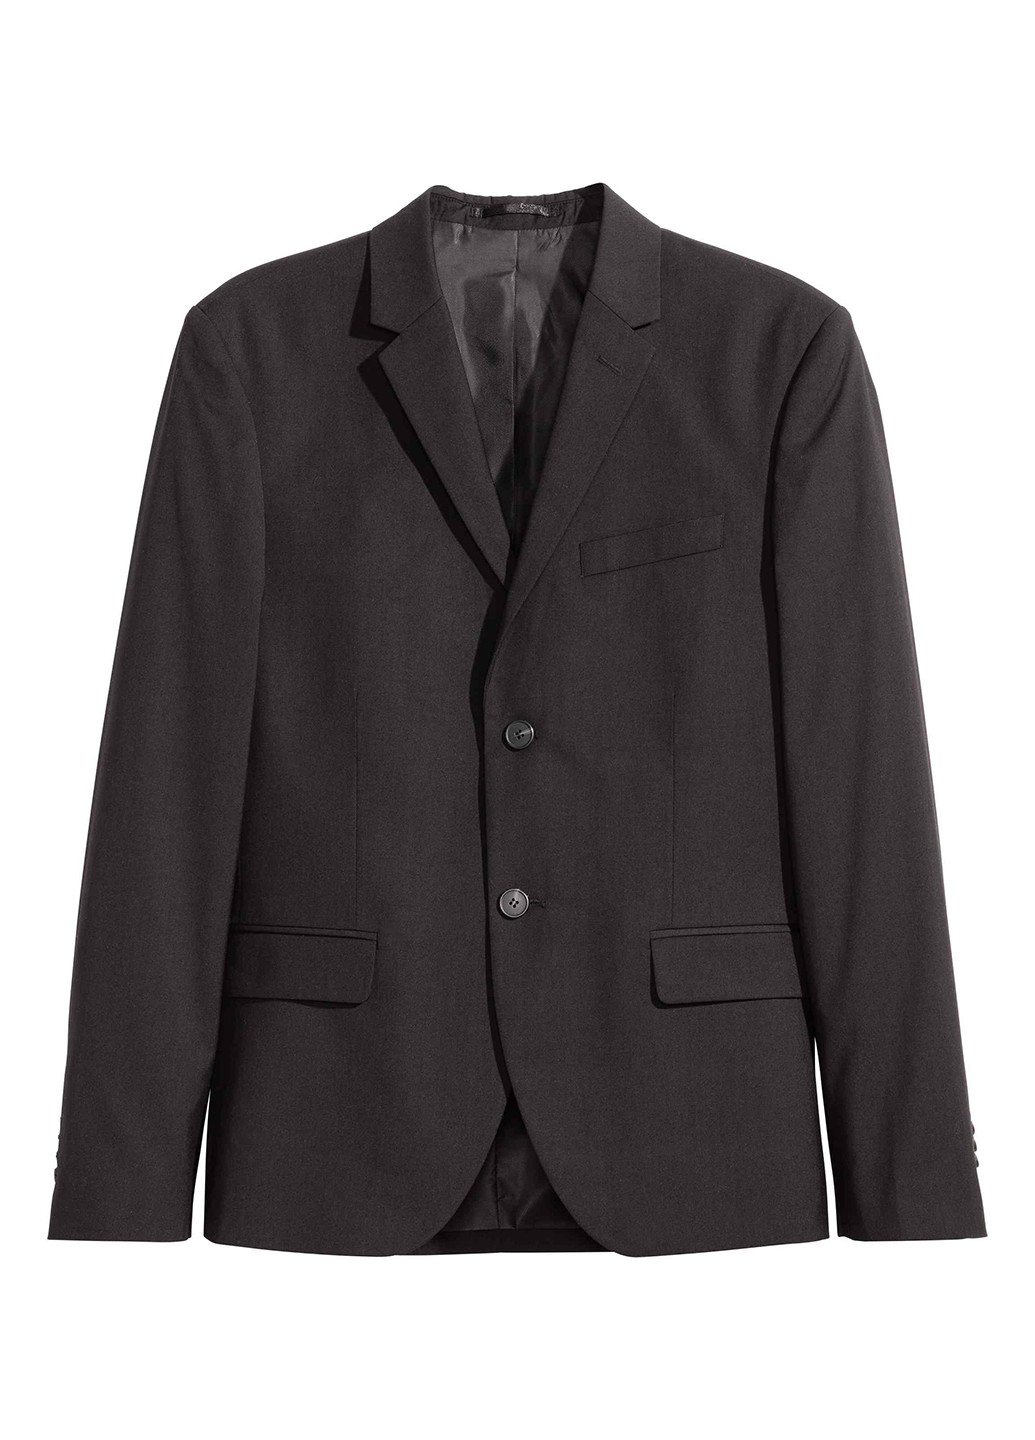 Пиджак H&M однотонный чёрный деловой полиэстер